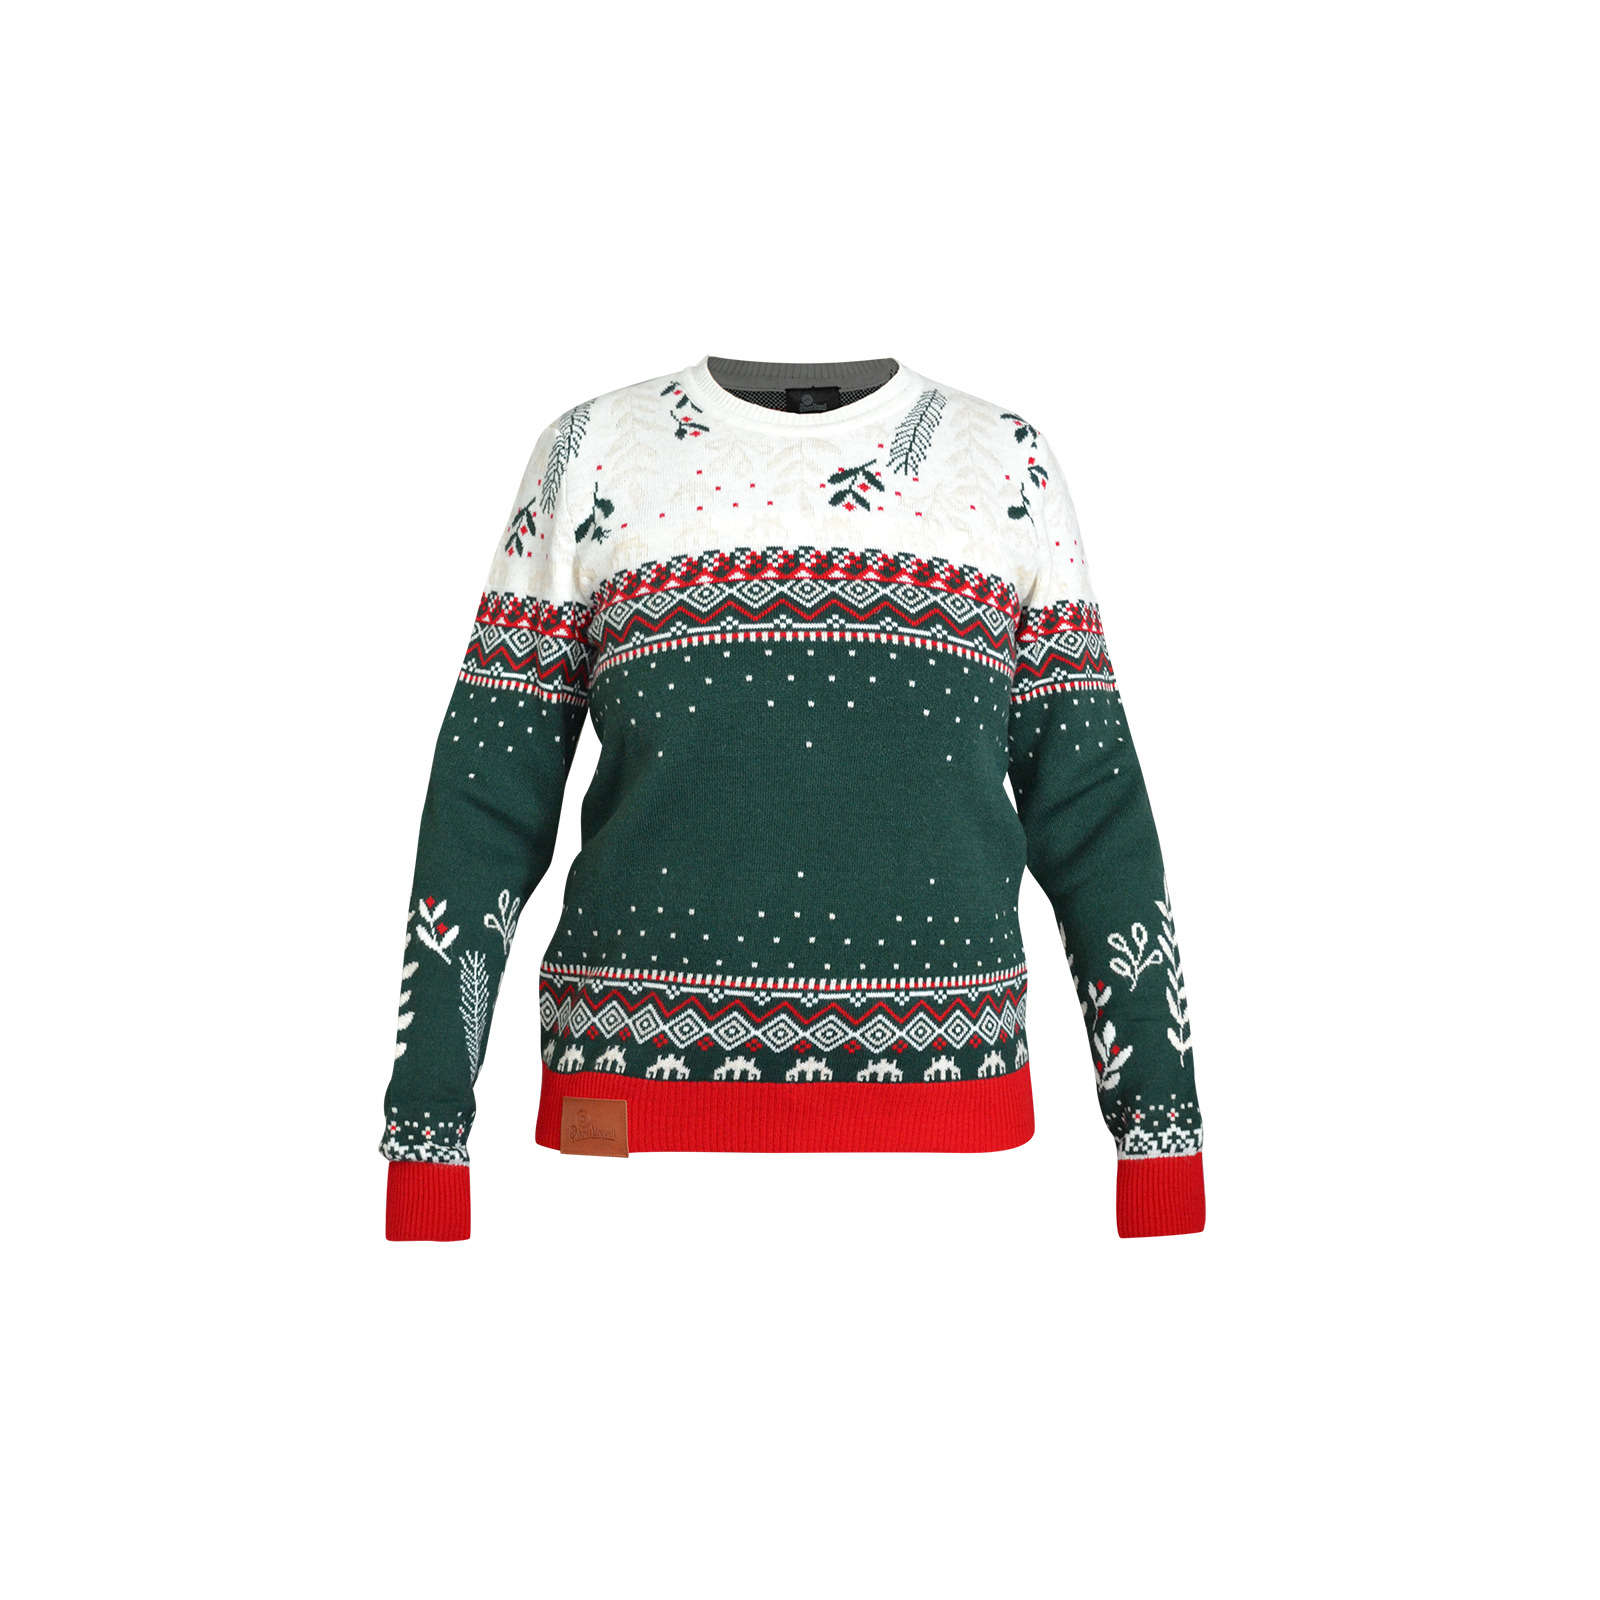 Pilsner Urquell Christmas Sweater for Women